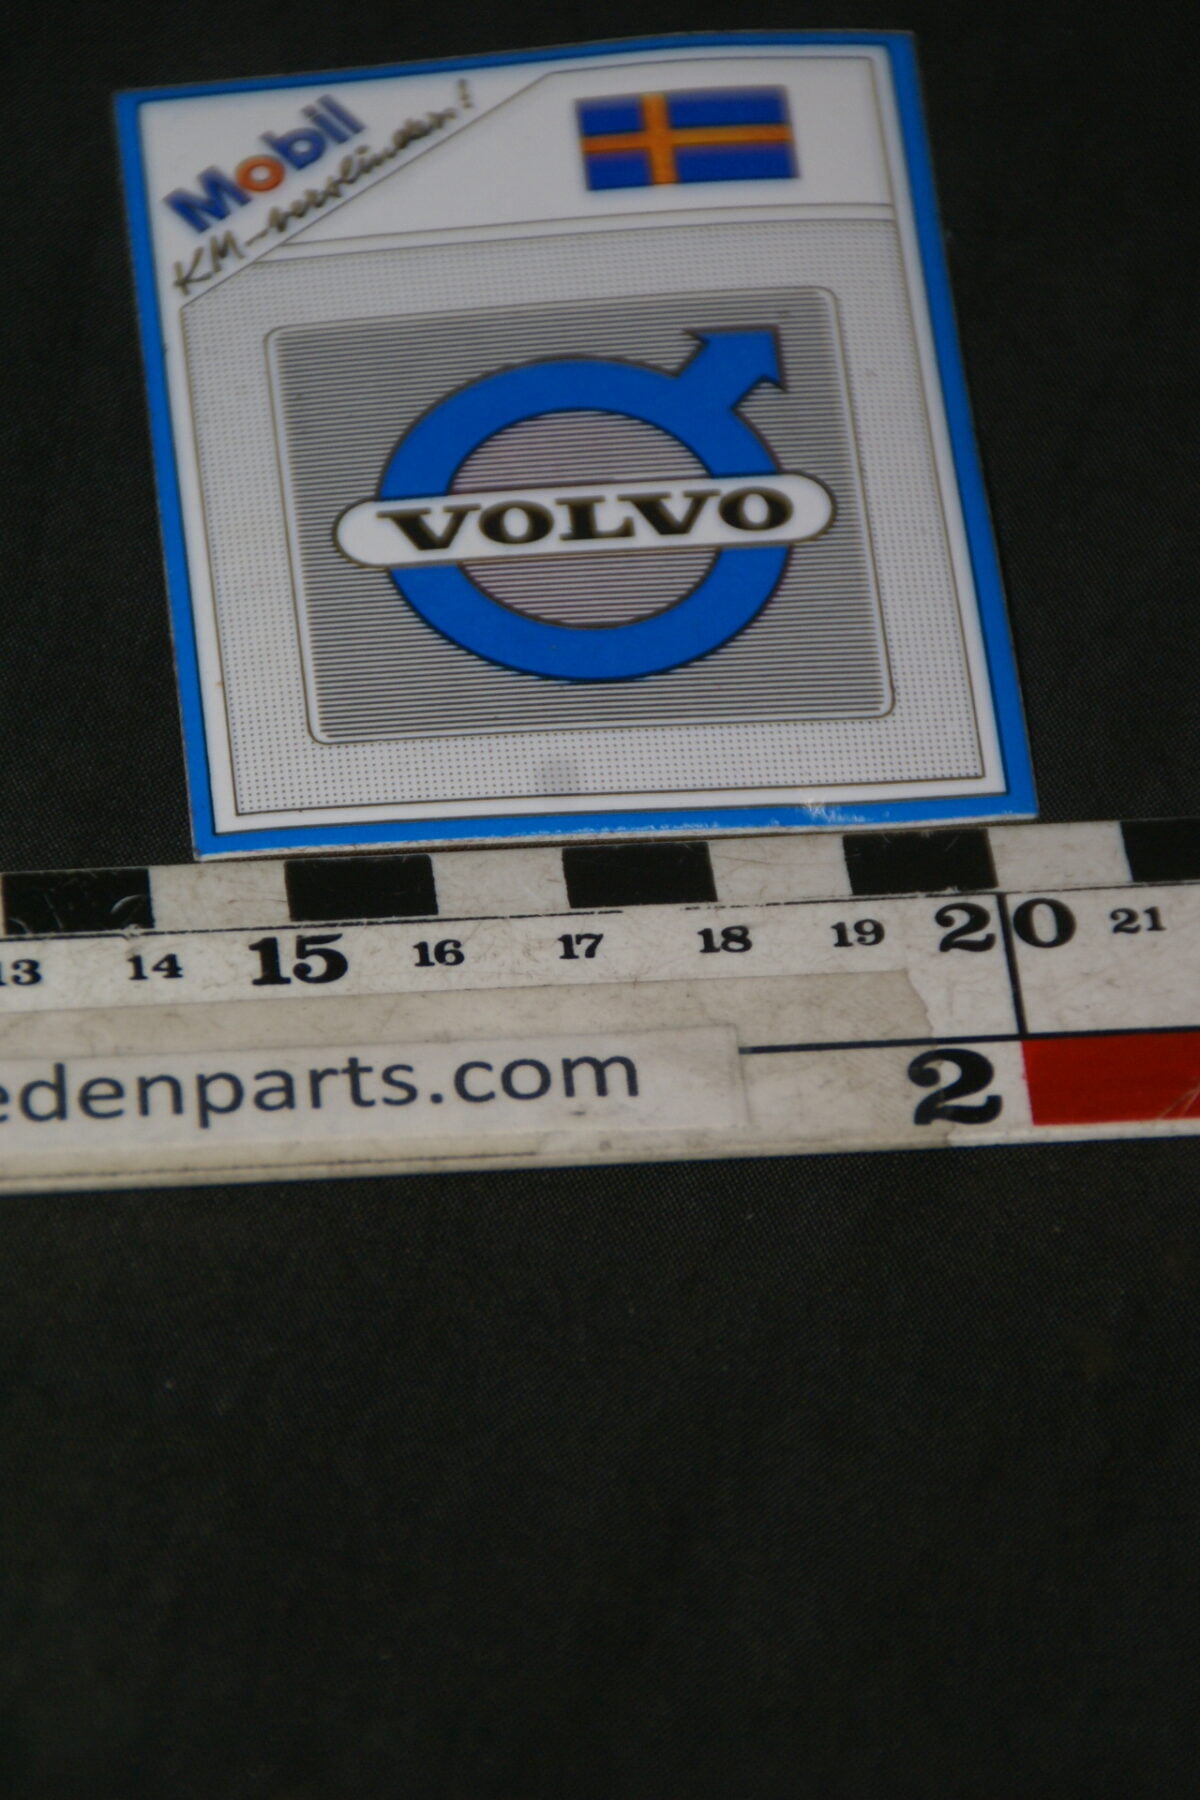 DSC02588 originele sticker Volvo met Zweedse vlag NOS-50d7b65b